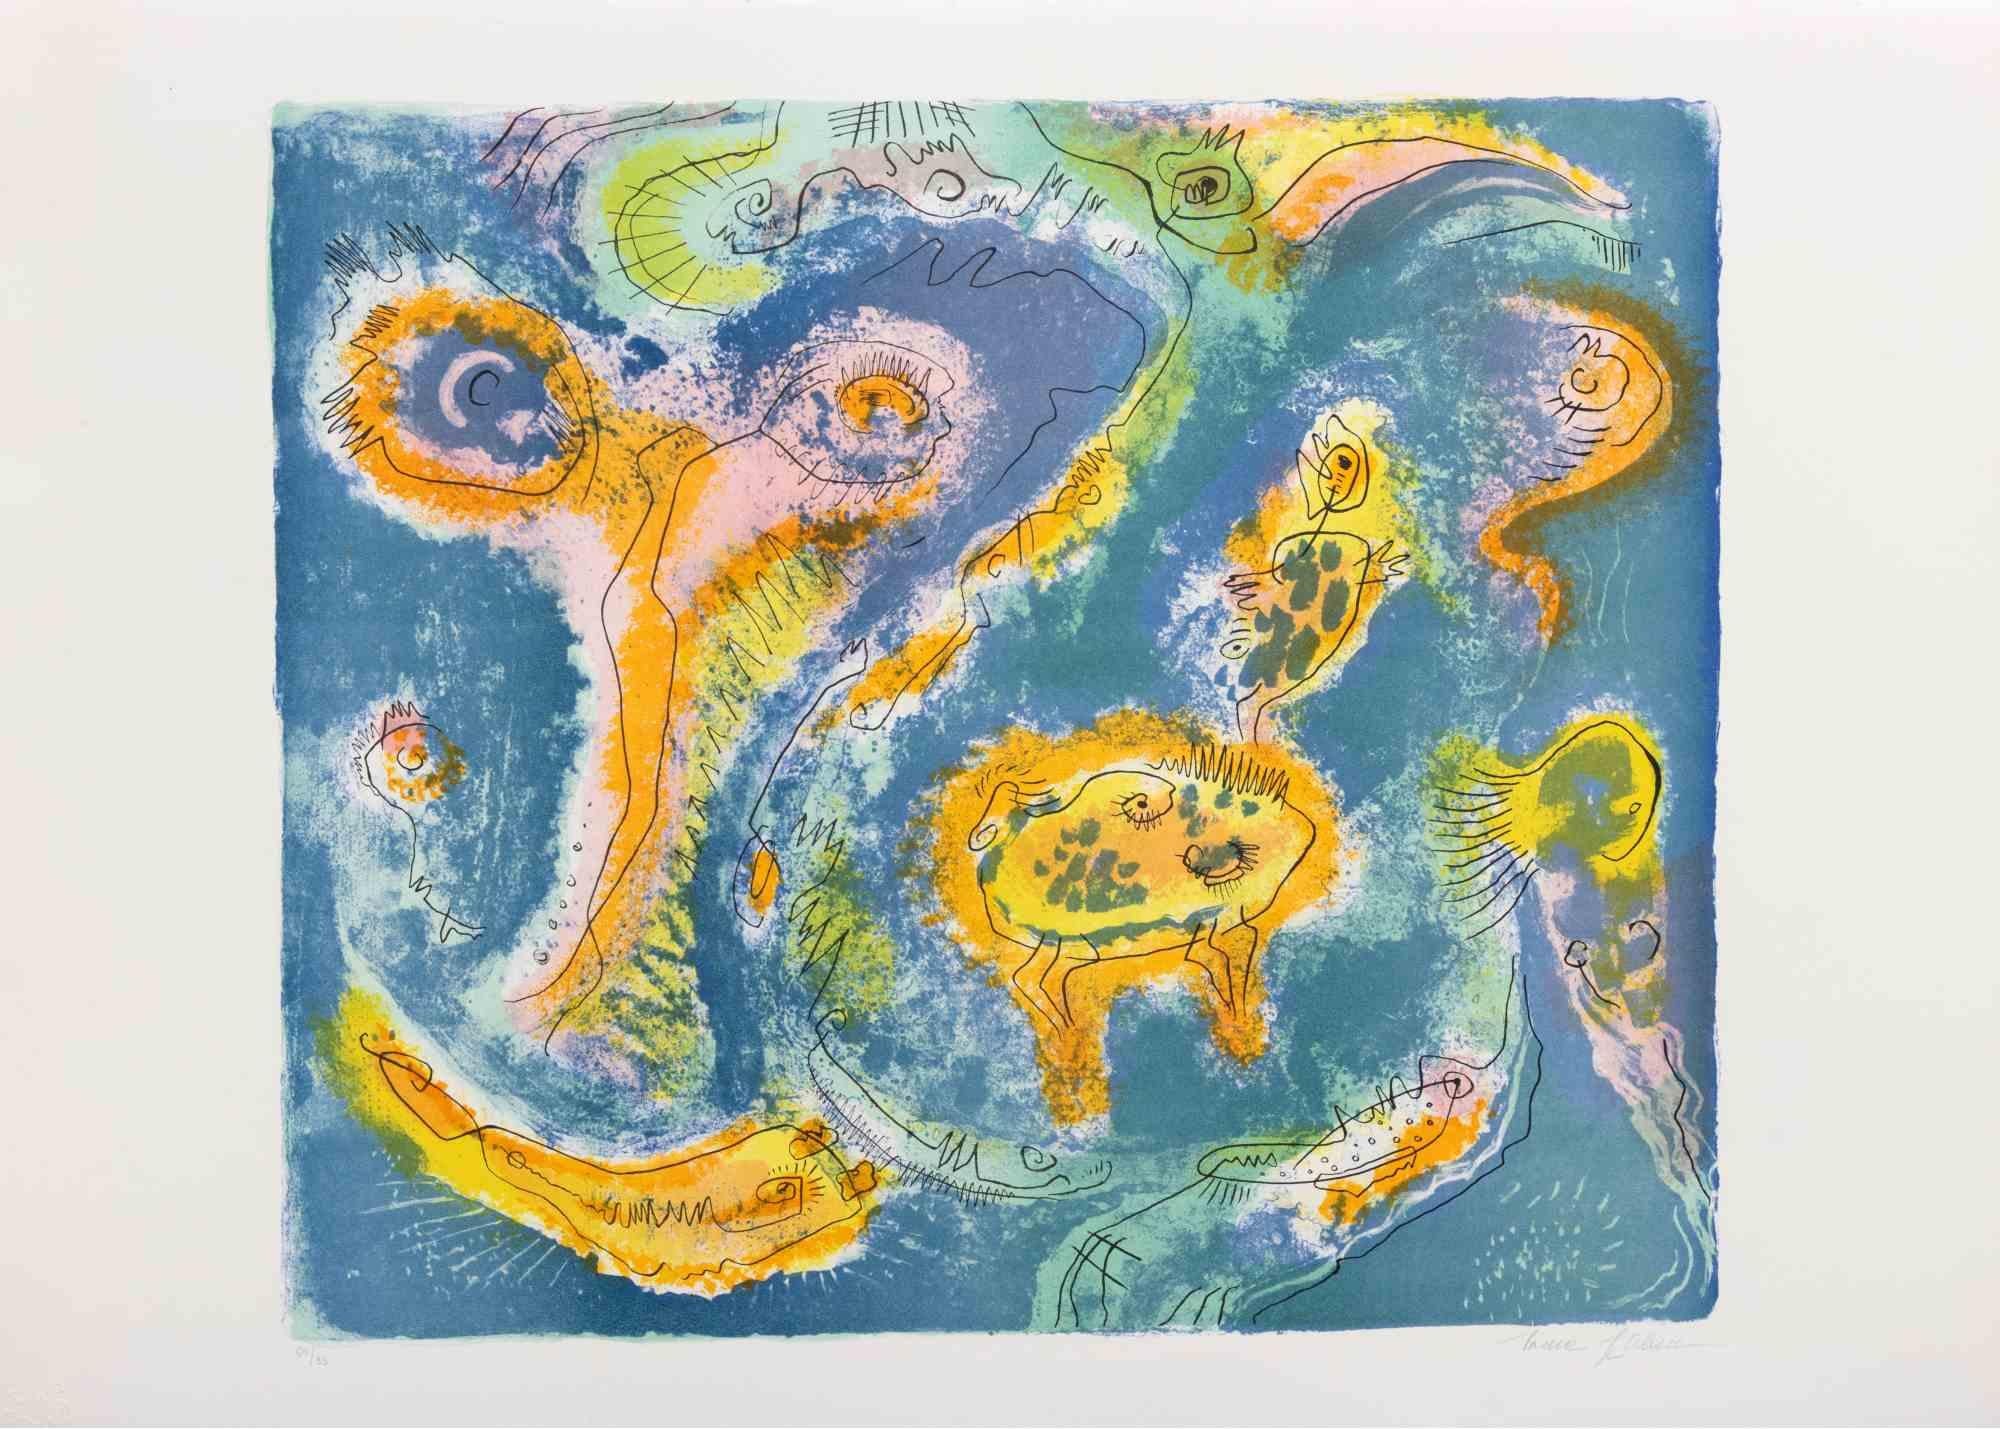 L'étang est une œuvre d'art contemporain réalisée par Le Pond dans les années 1970.

Lithographie en couleurs mélangées.

Signé à la main dans la marge inférieure.

Numéroté dans la marge inférieure.

Édition de 60/95.